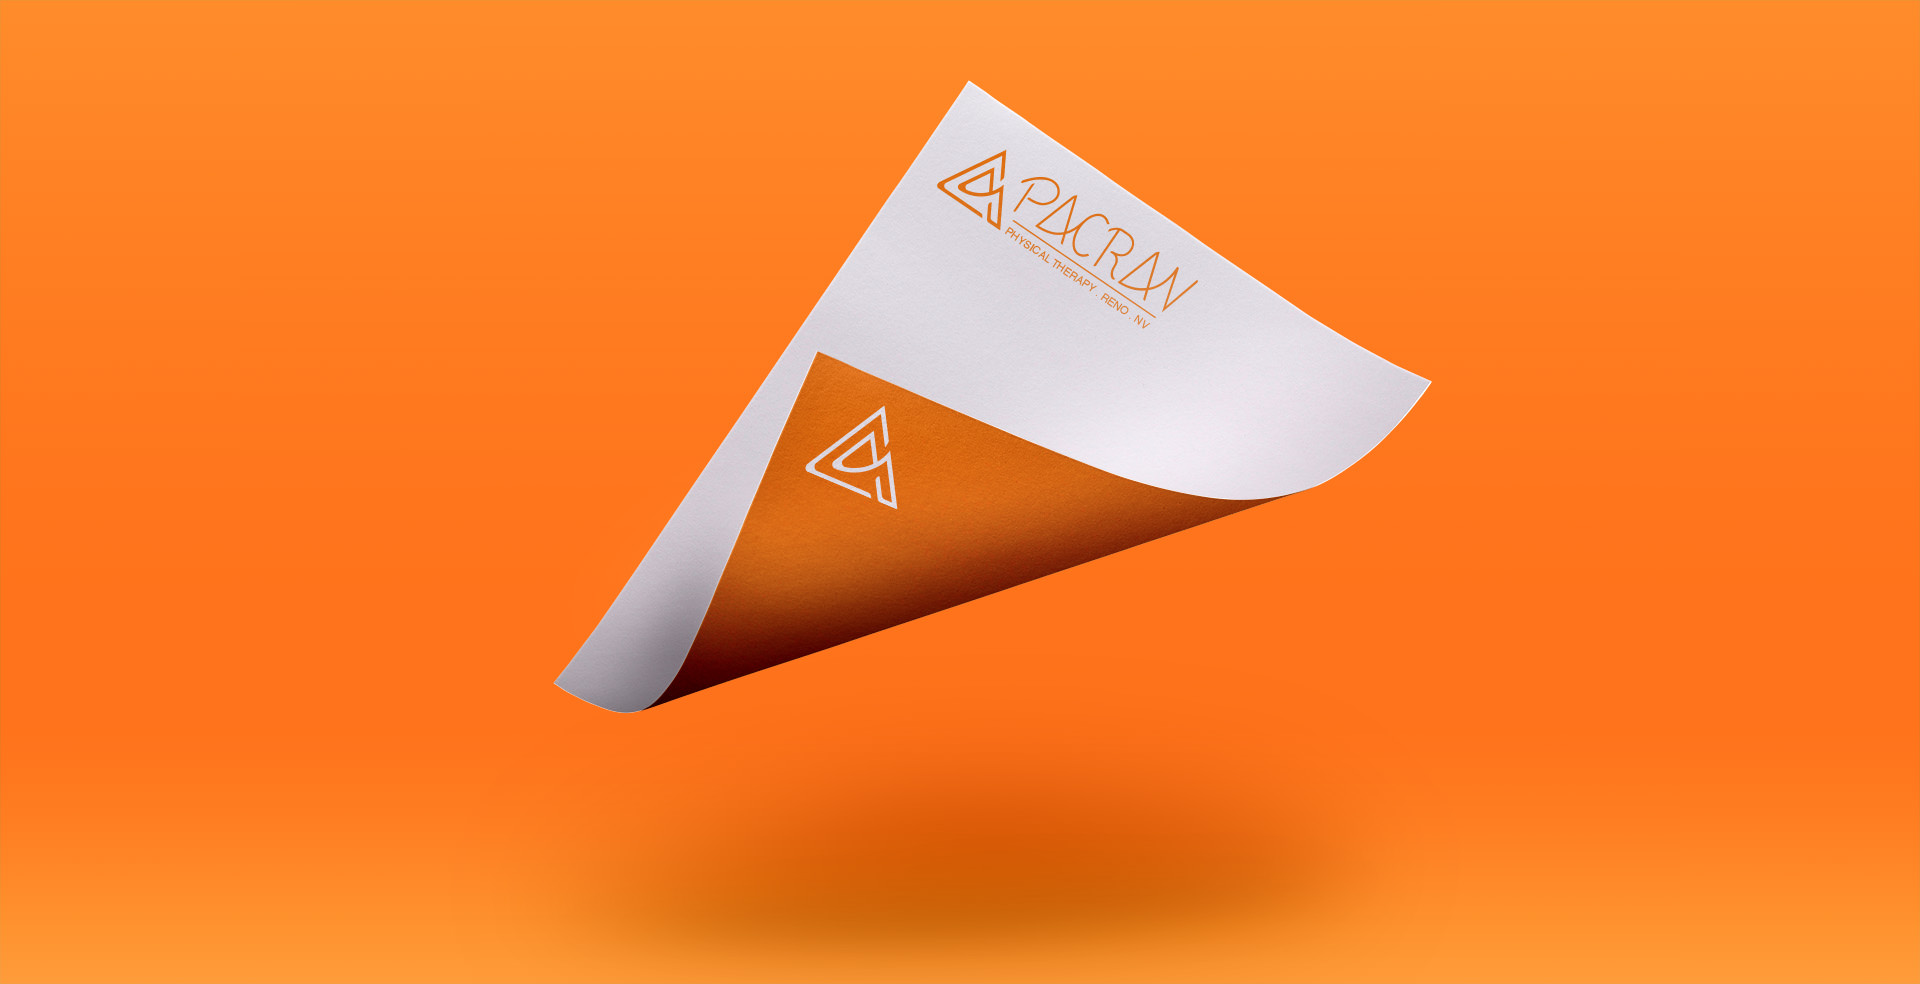 pacrav branding full logo and icon